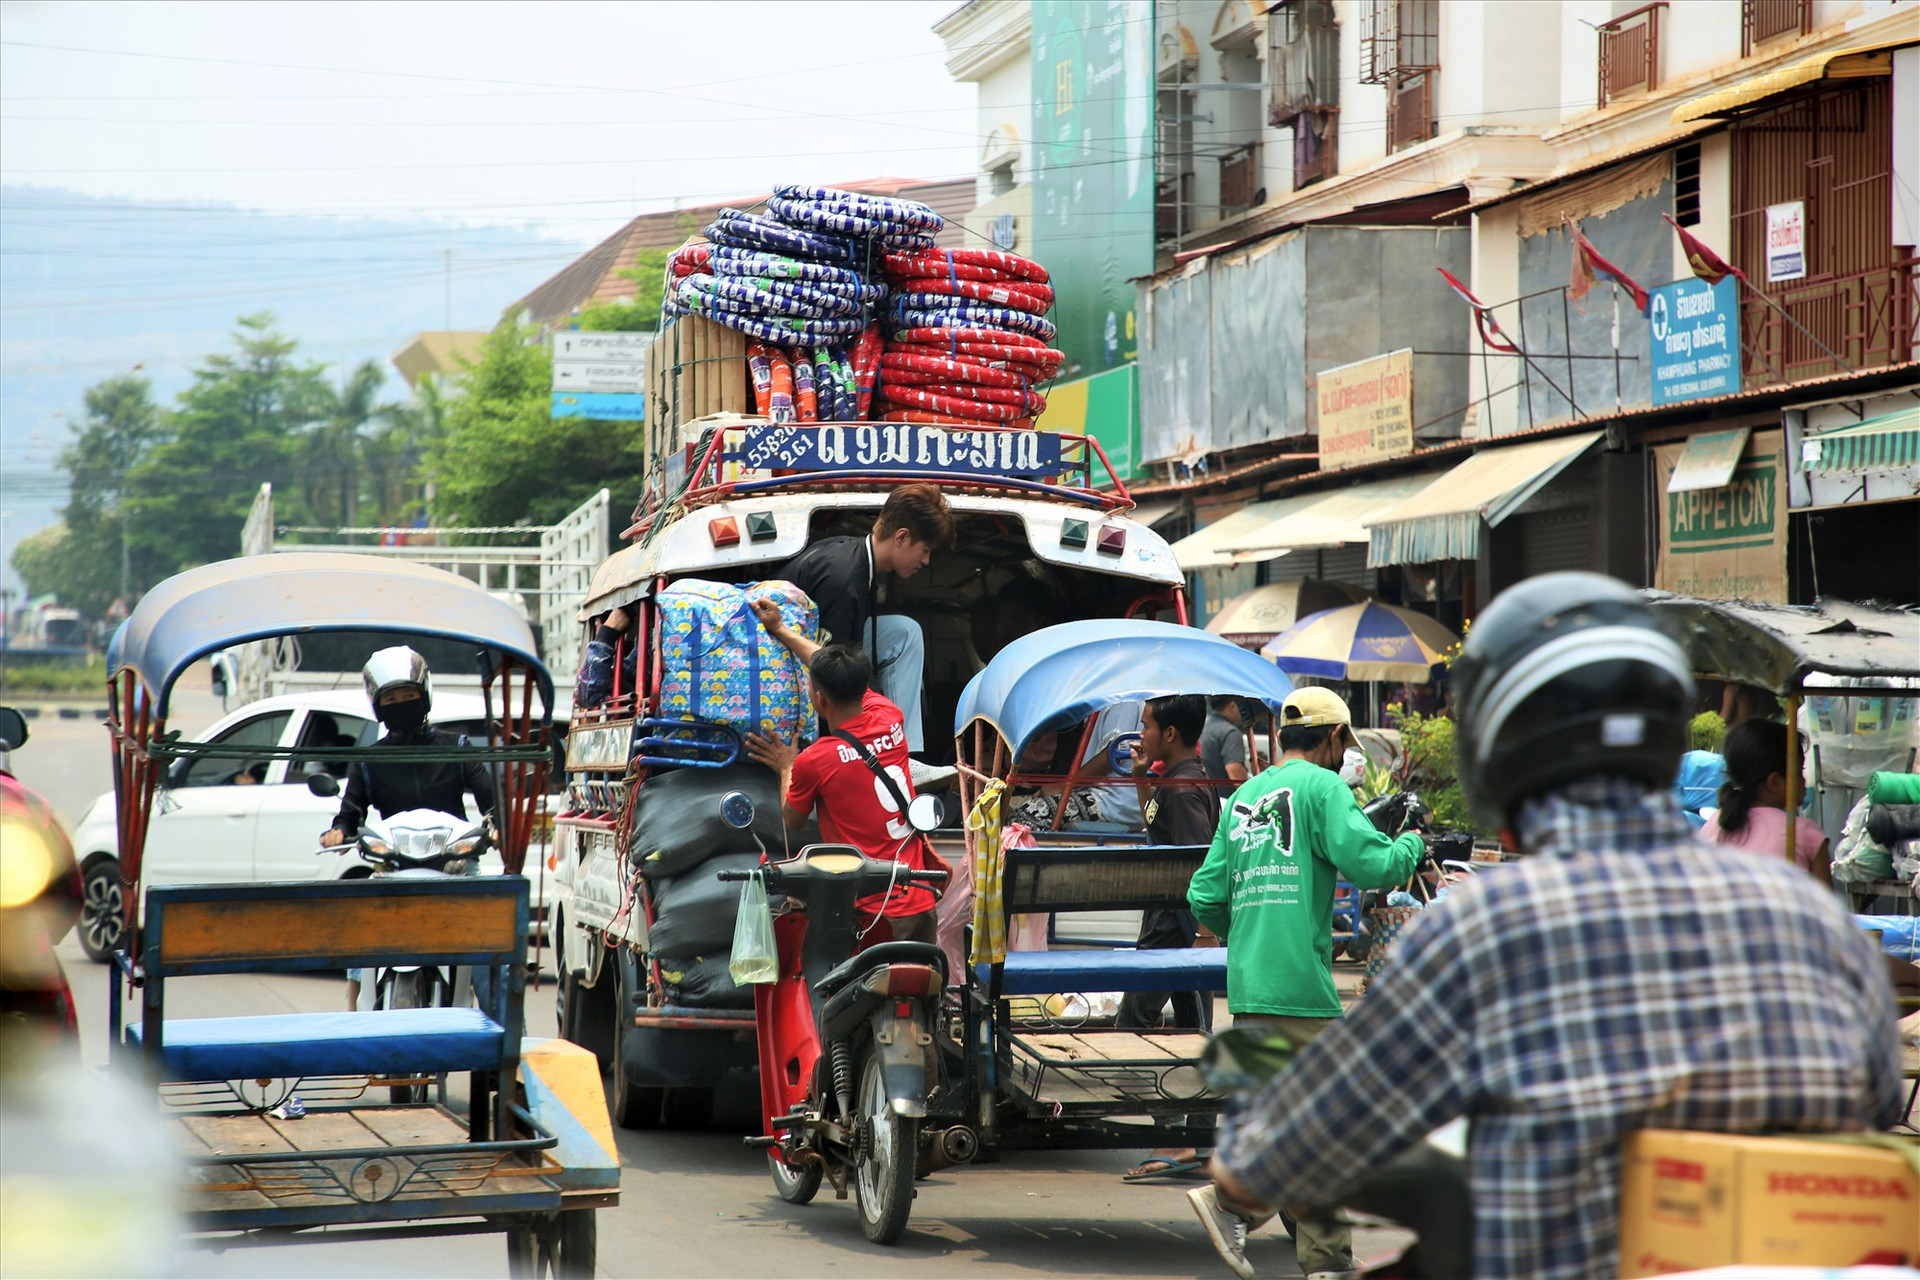 Thị trường Nam Lào, thông qua tuyến Hành lang kinh tế Đông Tây được kỳ vọng sẽ là điểm kết nối giao thương tiềm năng của Việt Nam. Ảnh: ALĂNG NGƯỚC